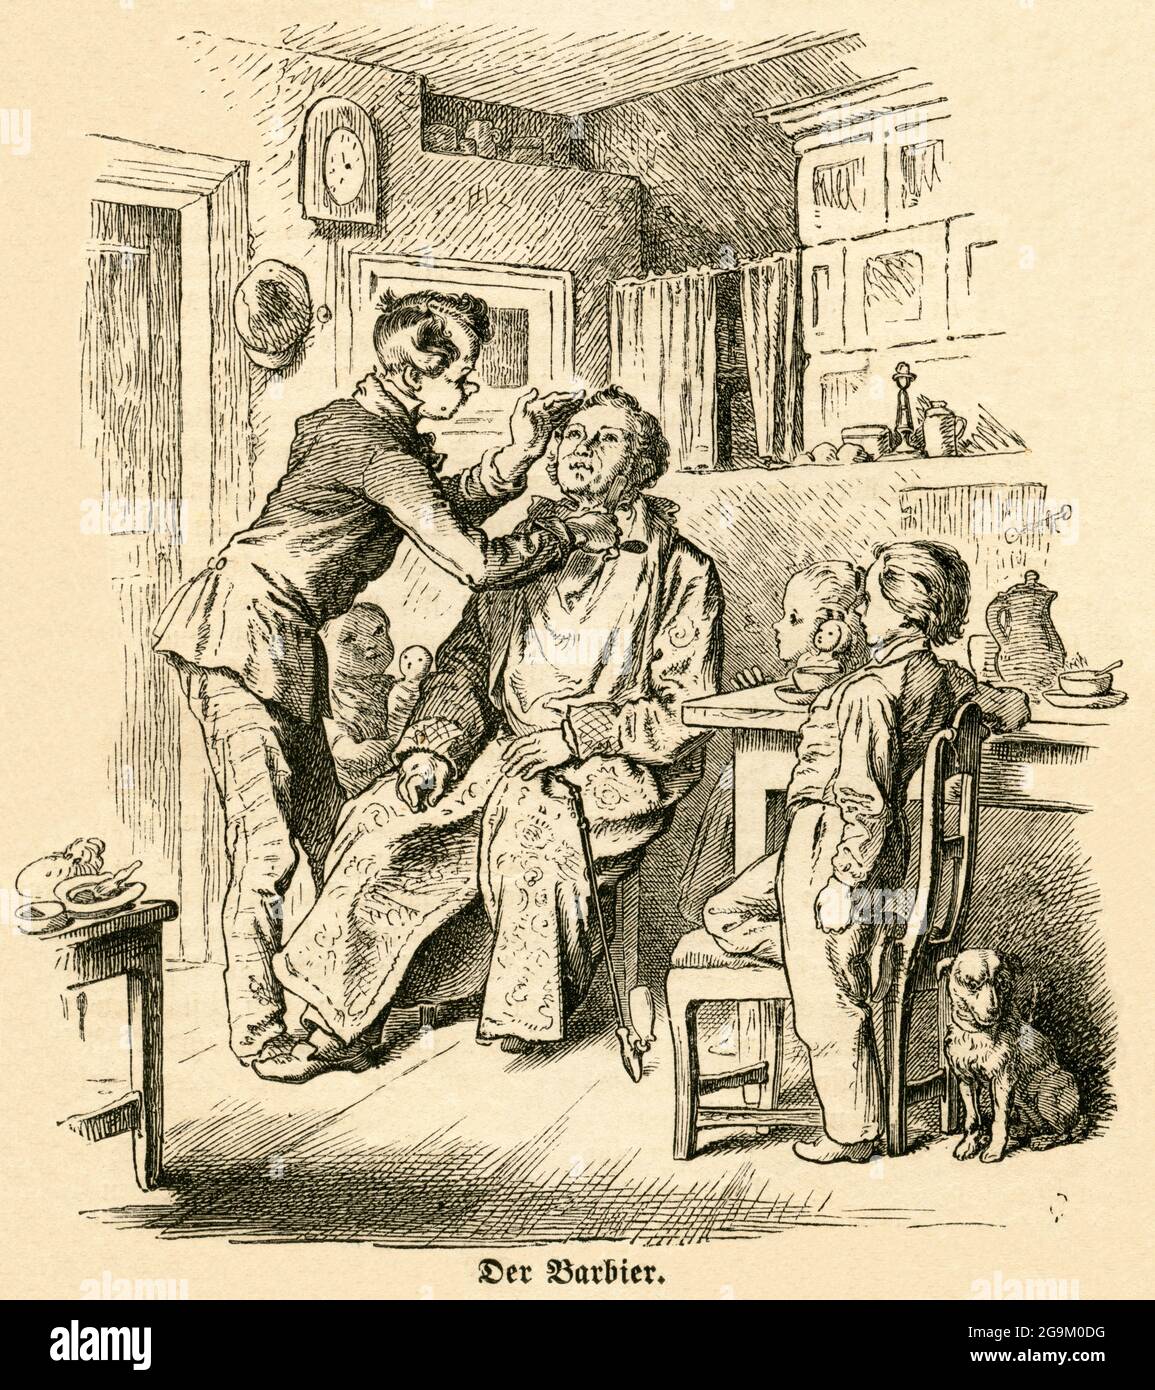 Europa, Deutschland, der Barbier, Holzstich aus einer Zeitung, um 1862, ZUSÄTZLICHE-RIGHTS-CLEARANCE-INFO-NOT-AVAILABLE Stockfoto